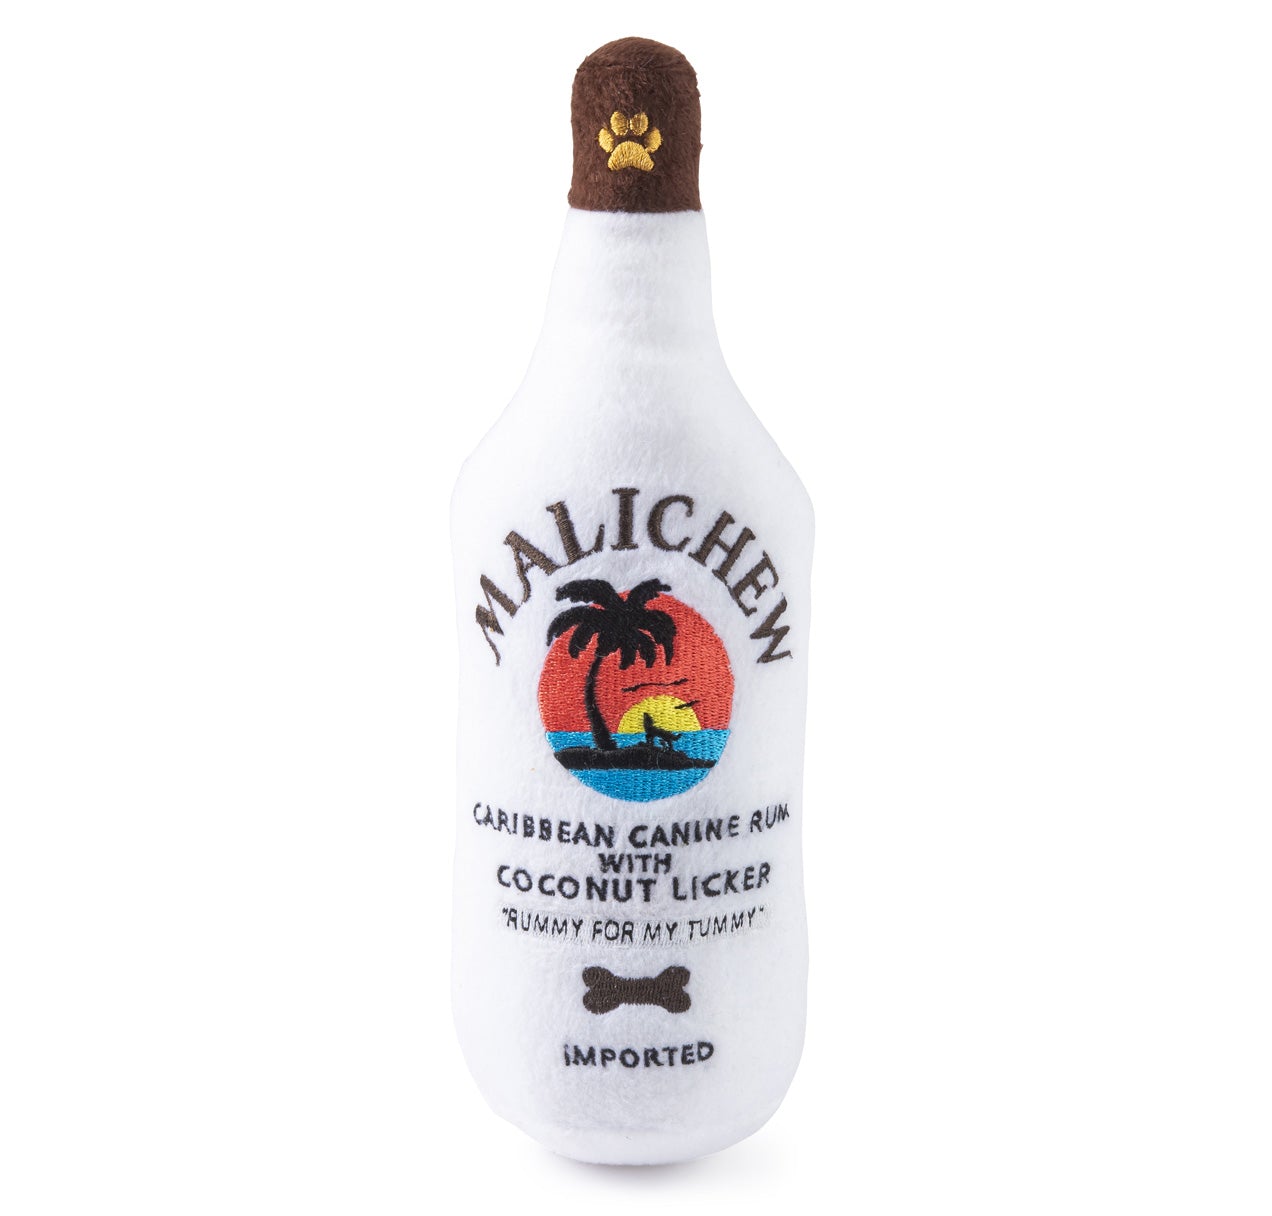 Malichew Rum - Pooch Luxury